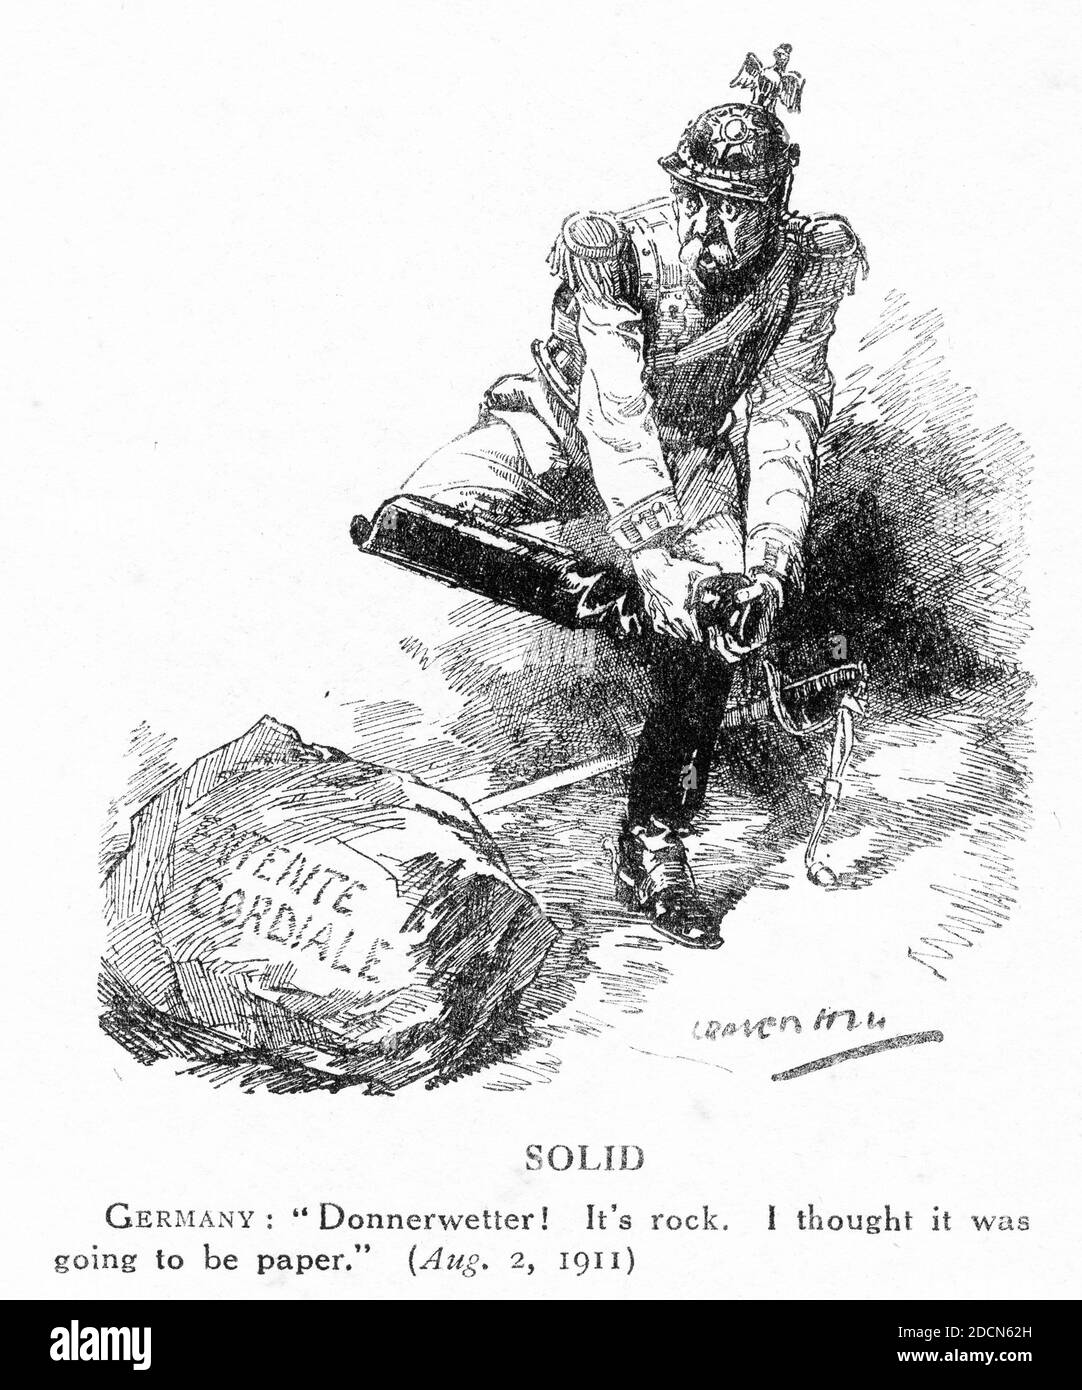 Gravur von Deutschland eine Überraschung auf der Entente Cordiale im Jahr 1911. Aus dem Magazin Punch, 1911. Stockfoto